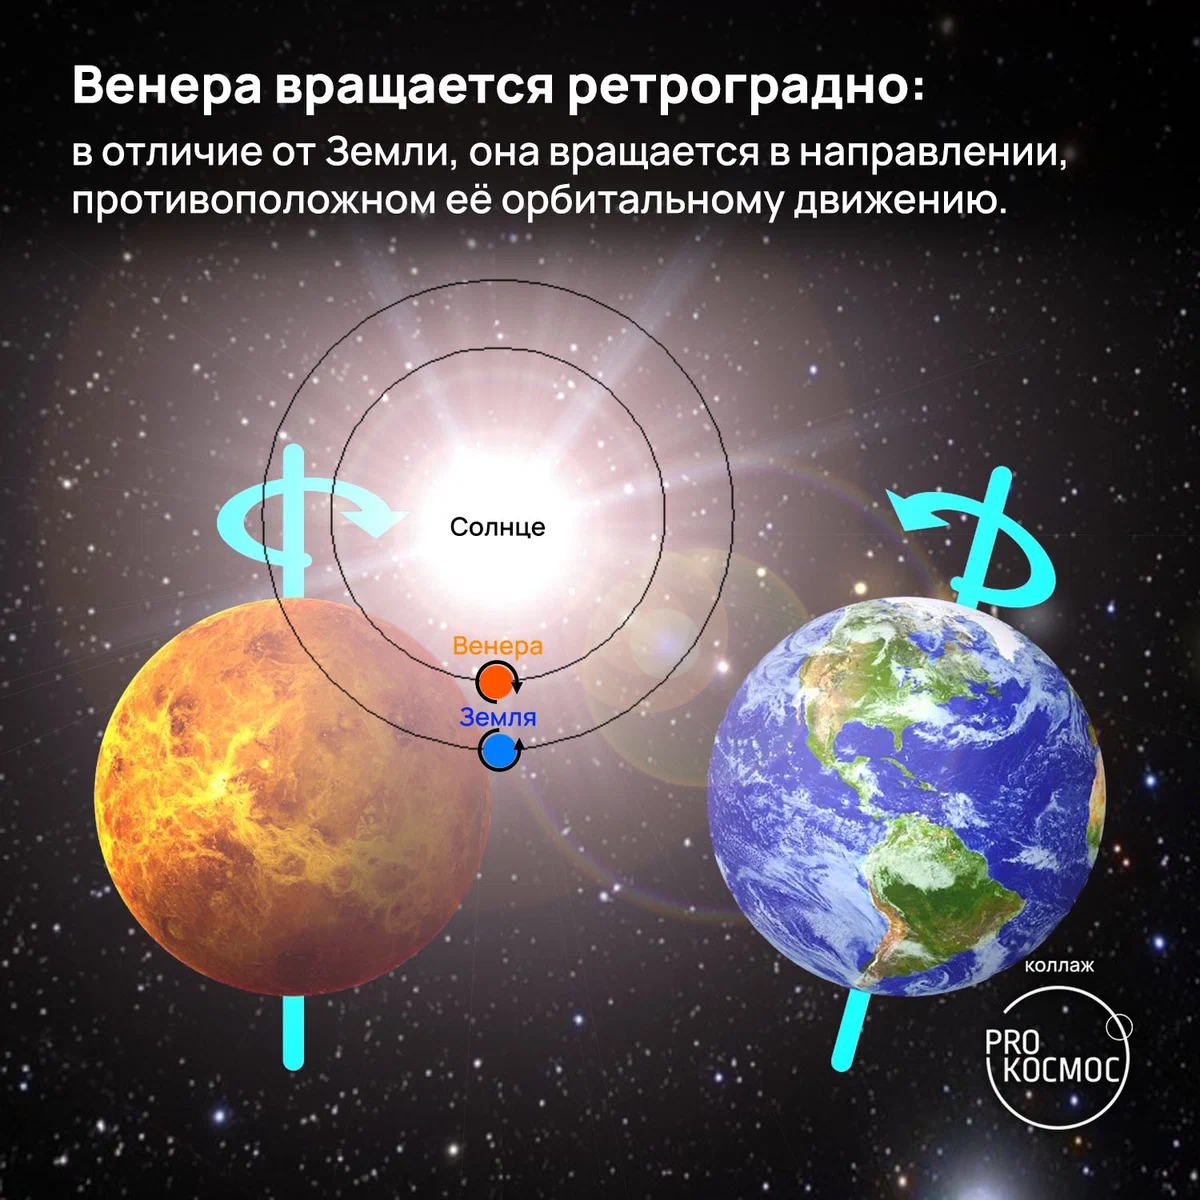 Экстремальная Венера: ворох занимательных фактов о второй планете в годовщину запуска станции «Венера-12» height=1200px width=1200px